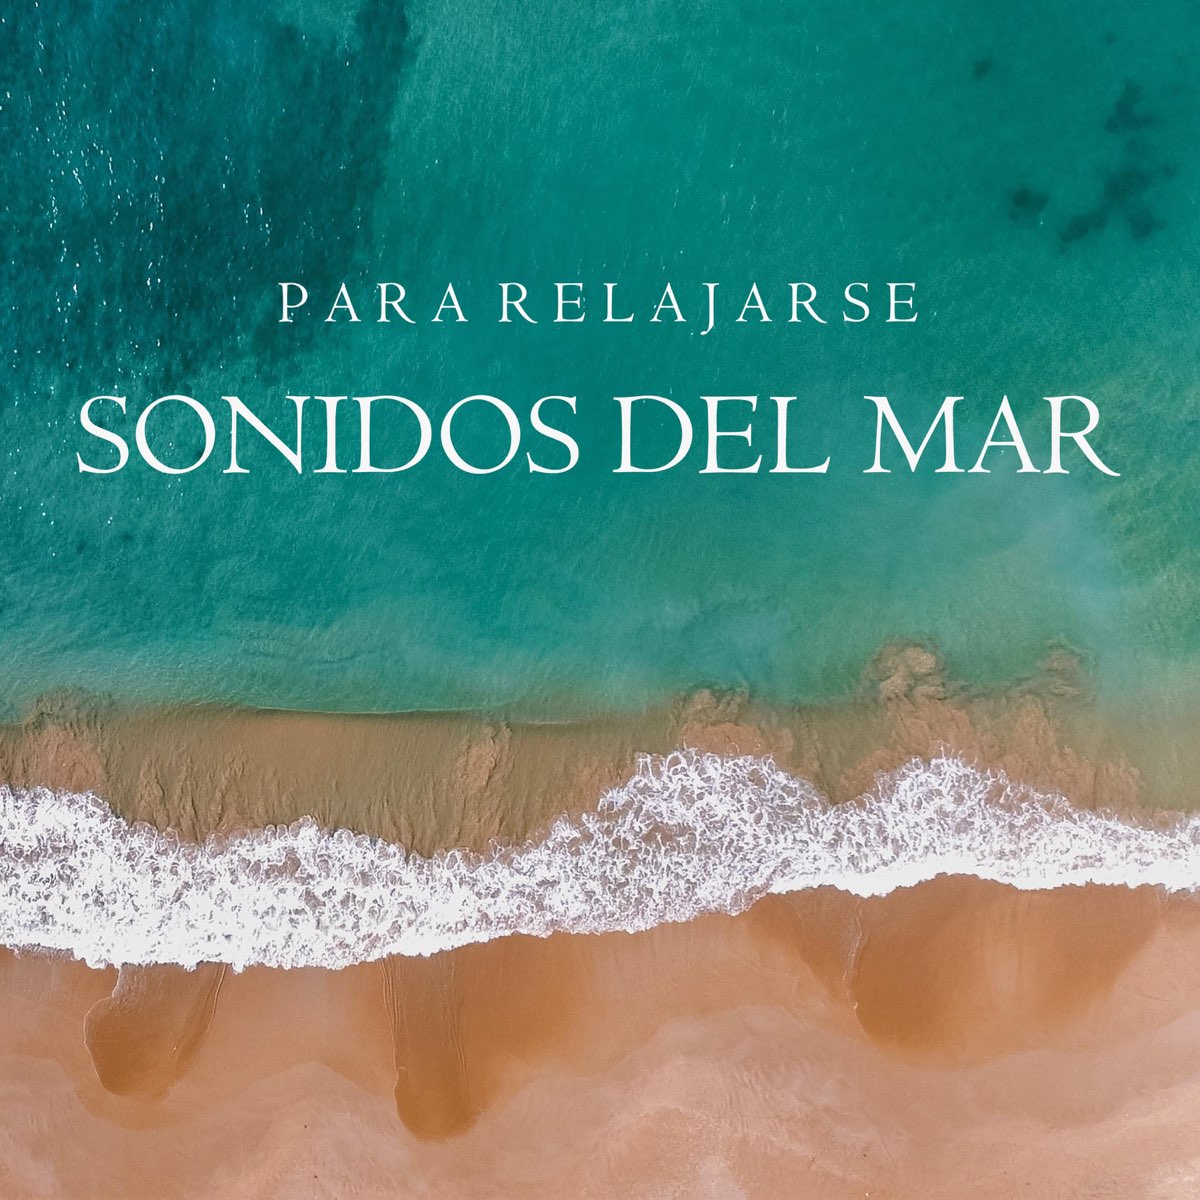 Sonidos del Mar para Relajarse by Sonidos Del Mar on Apple Music